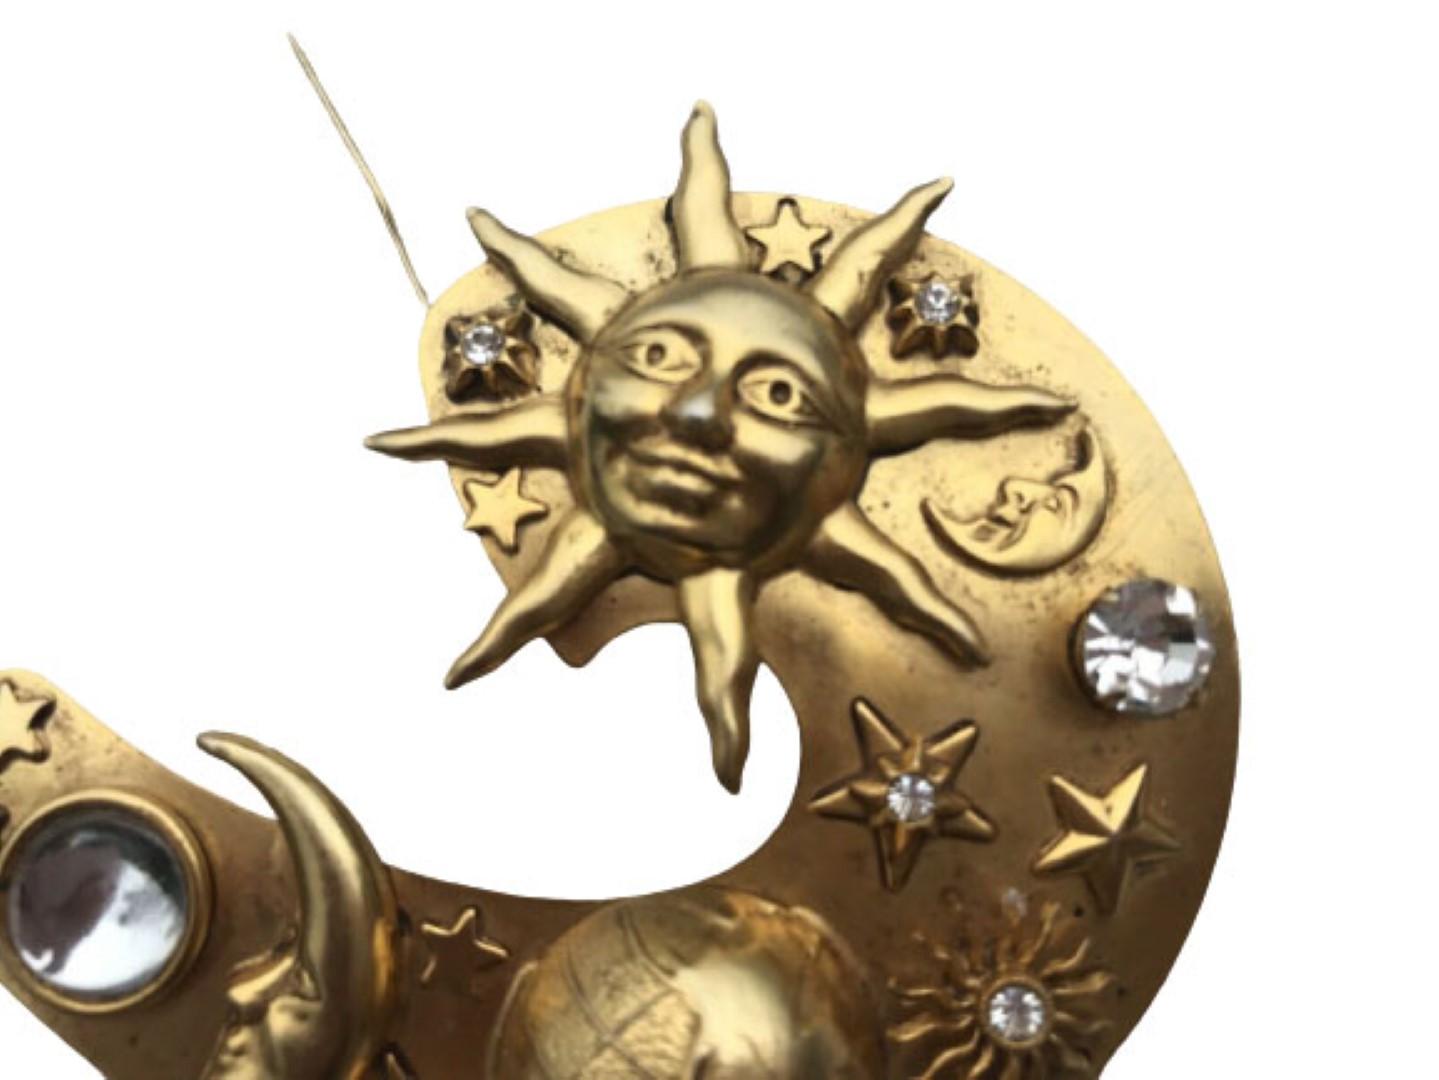 Magnifique et élégante broche Astrological Sun Moon and Planet Brooch by Askew of London avec des accents diamantés. Tonalité or. Mesurant environ 3